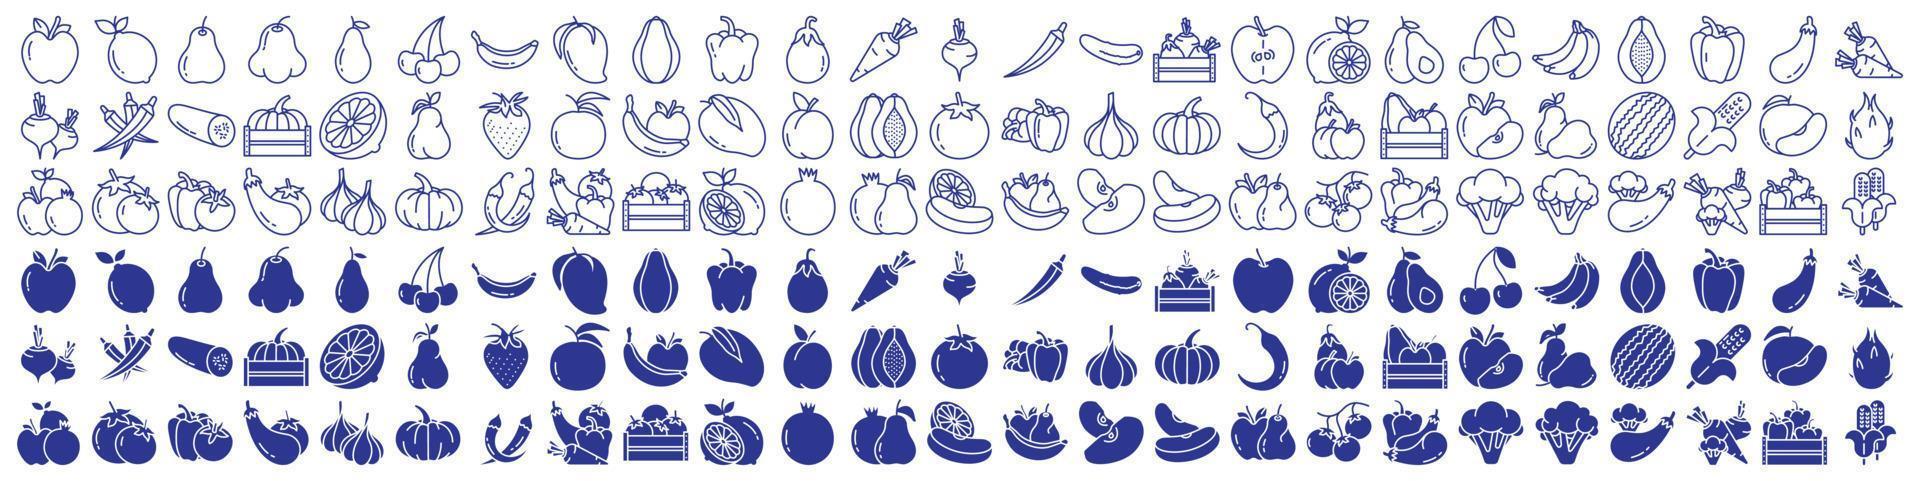 verzameling van pictogrammen verwant naar fruit en groenten, inclusief pictogrammen Leuk vinden appel, citroen, Peer, avocado en meer. vector illustraties, pixel perfect